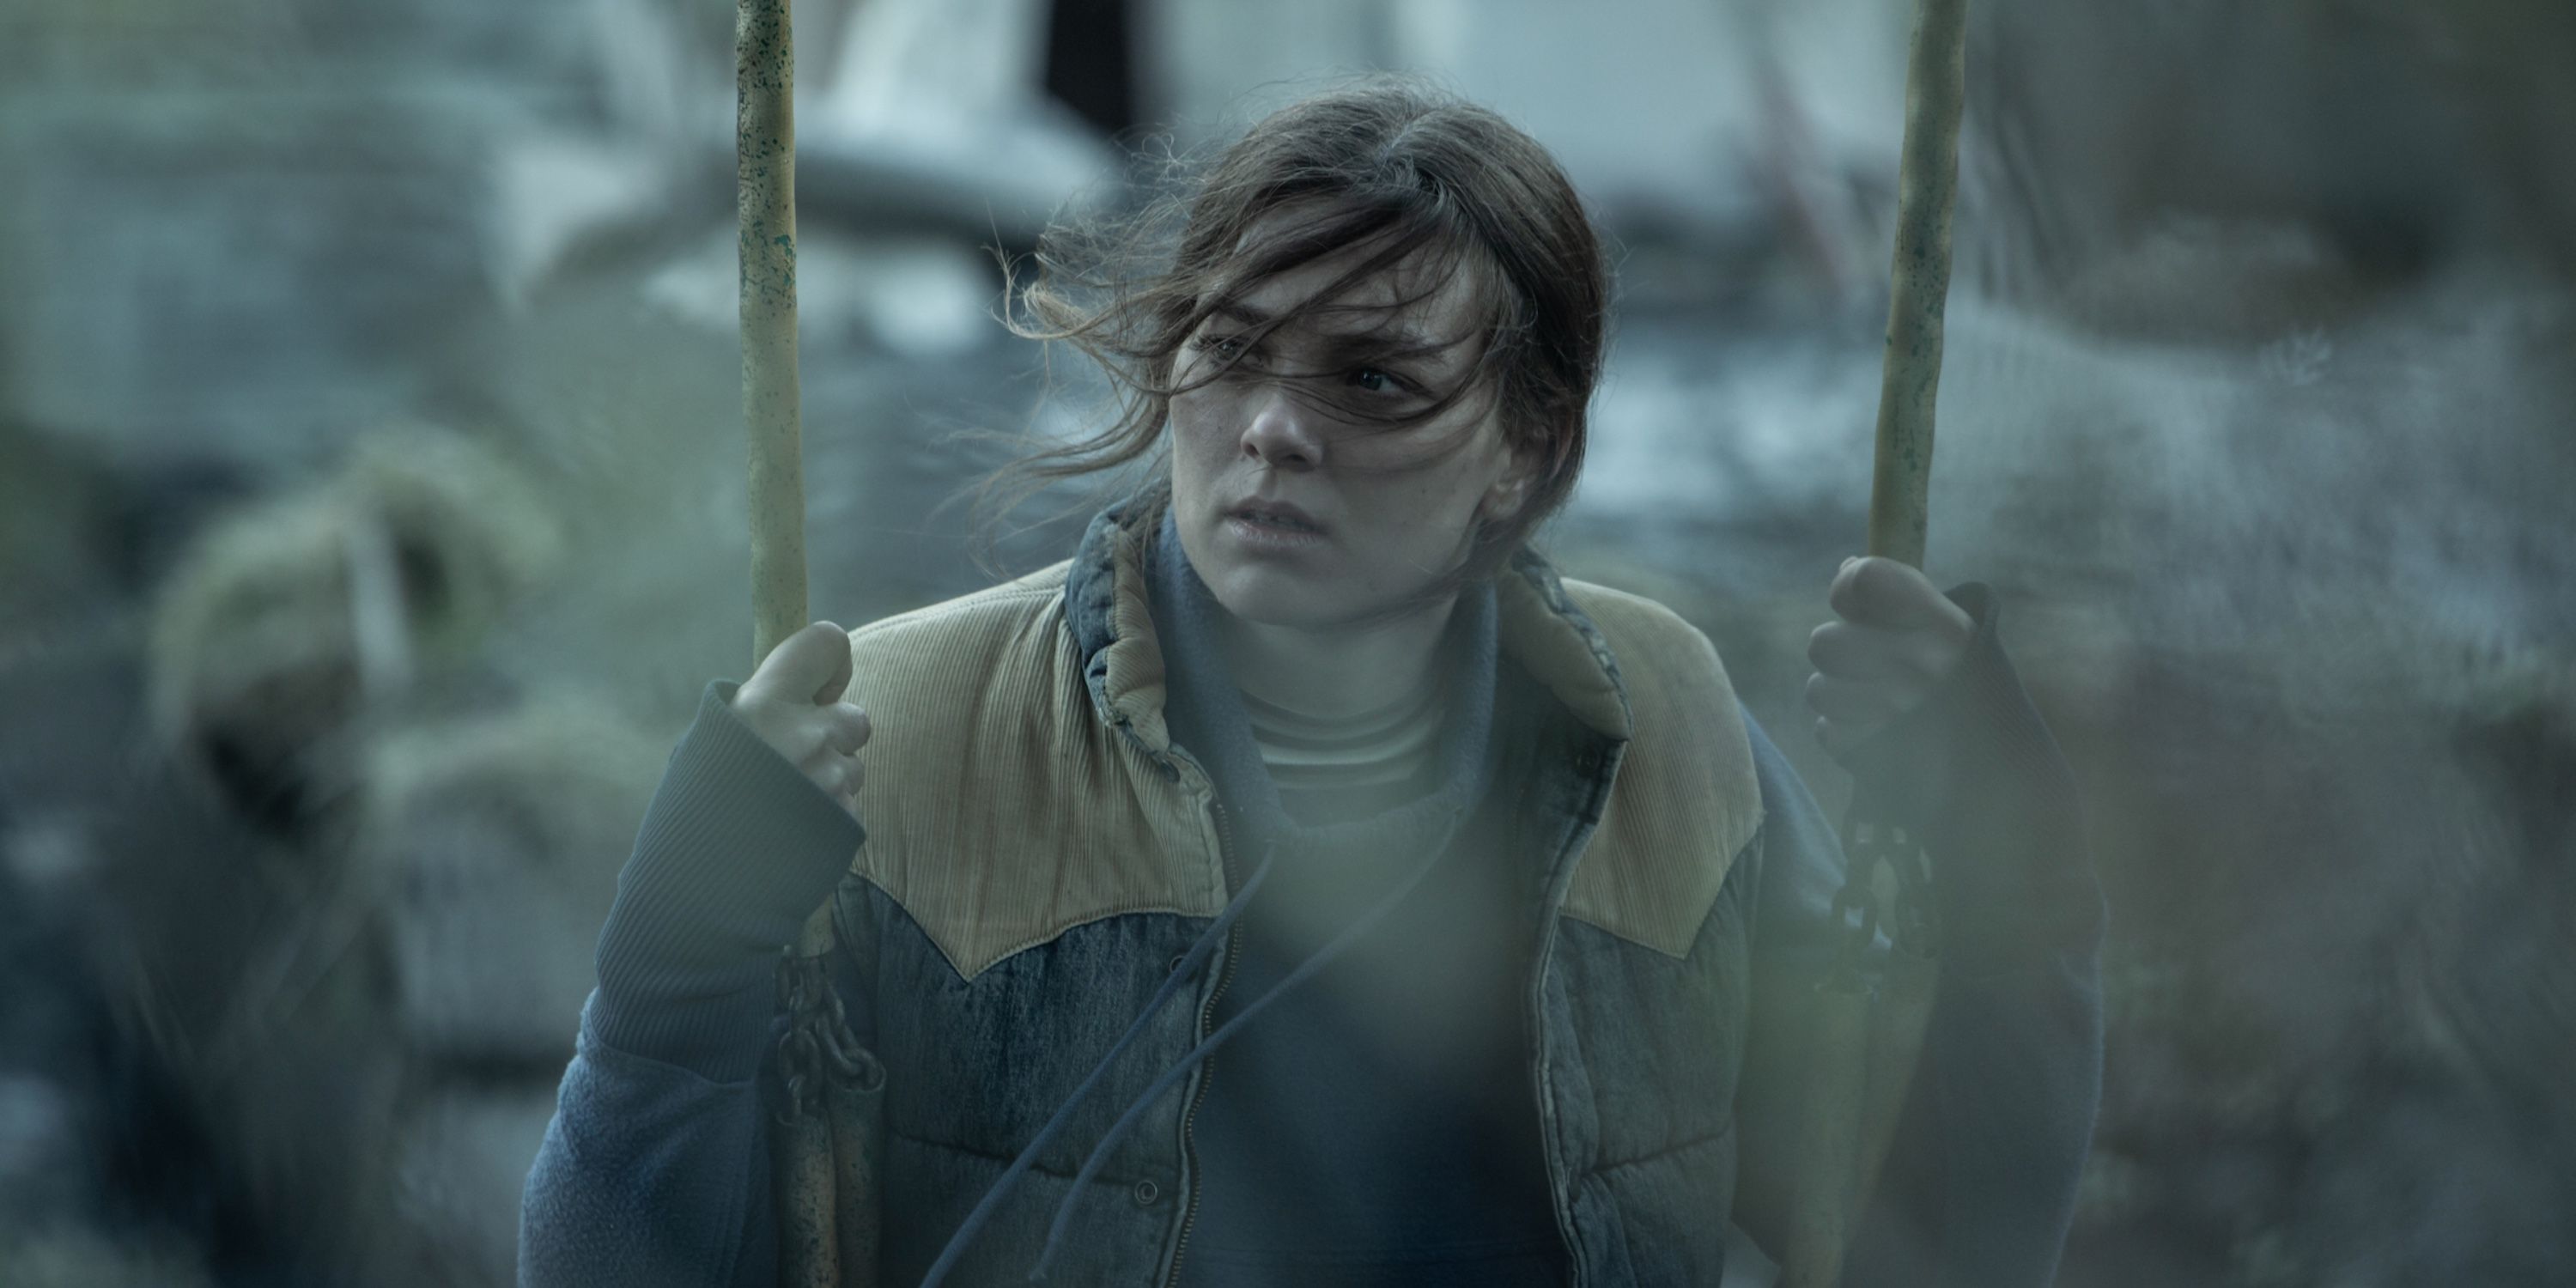 Íris Tanja Flygenring as Ása in Katla on Netflix